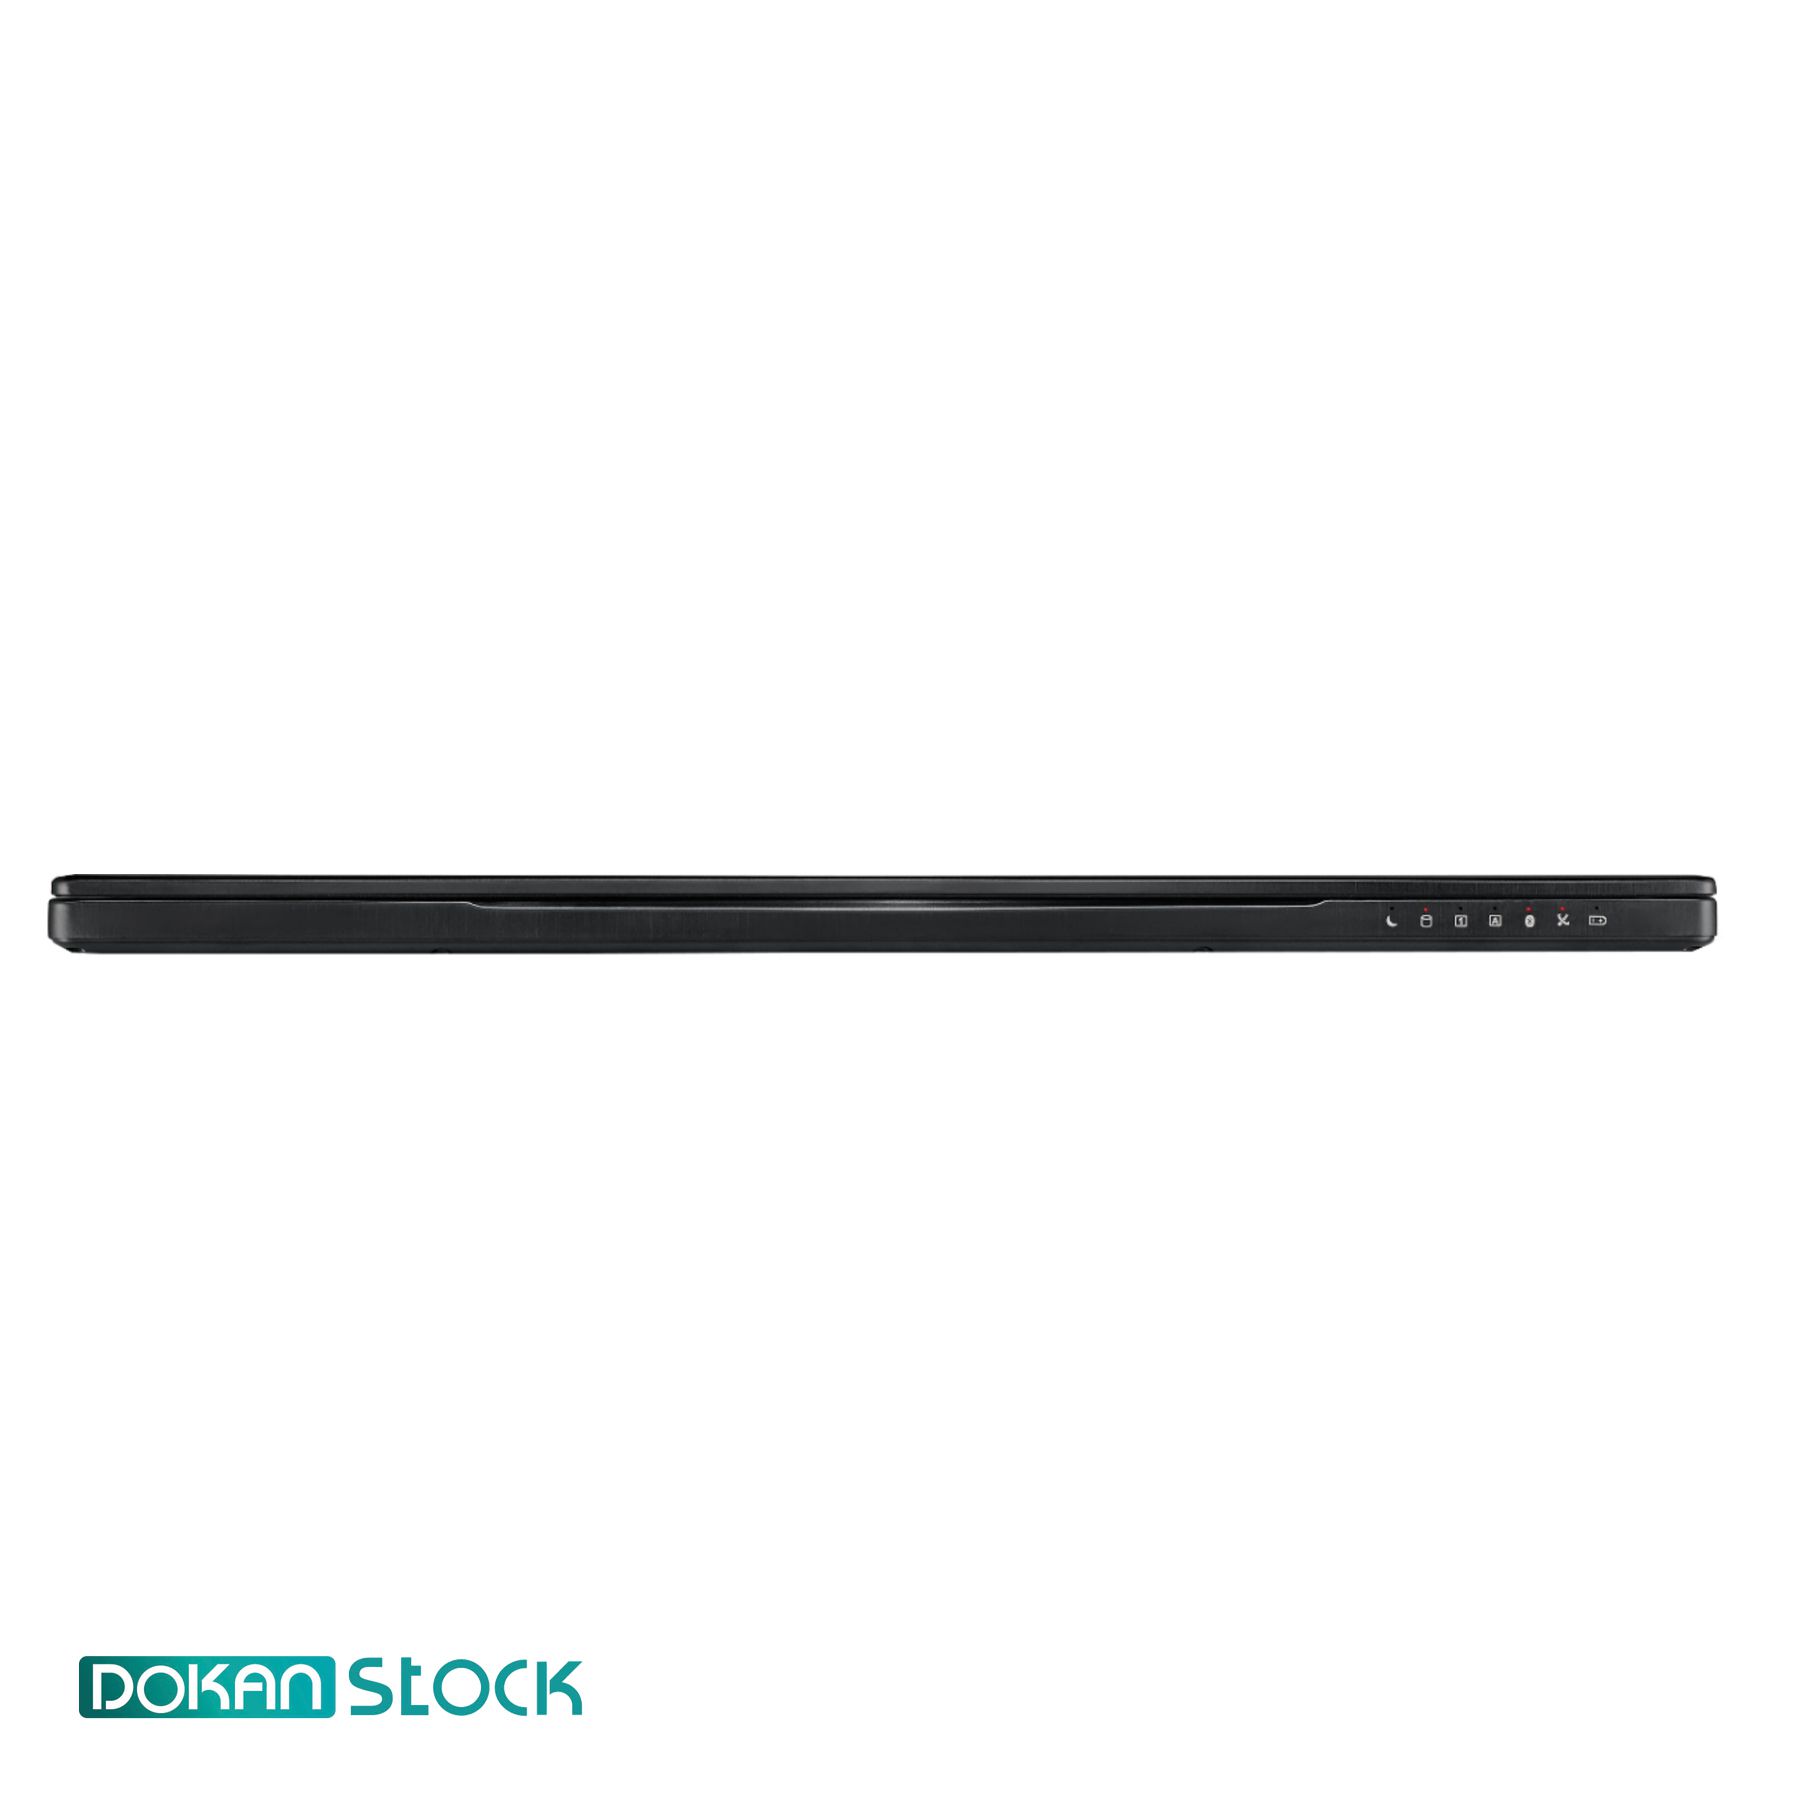 قیمت و خرید لپ تاپ گیمینگ 15 اینچی ام اس ای مدل   MSI GS63 Stealth 8RE